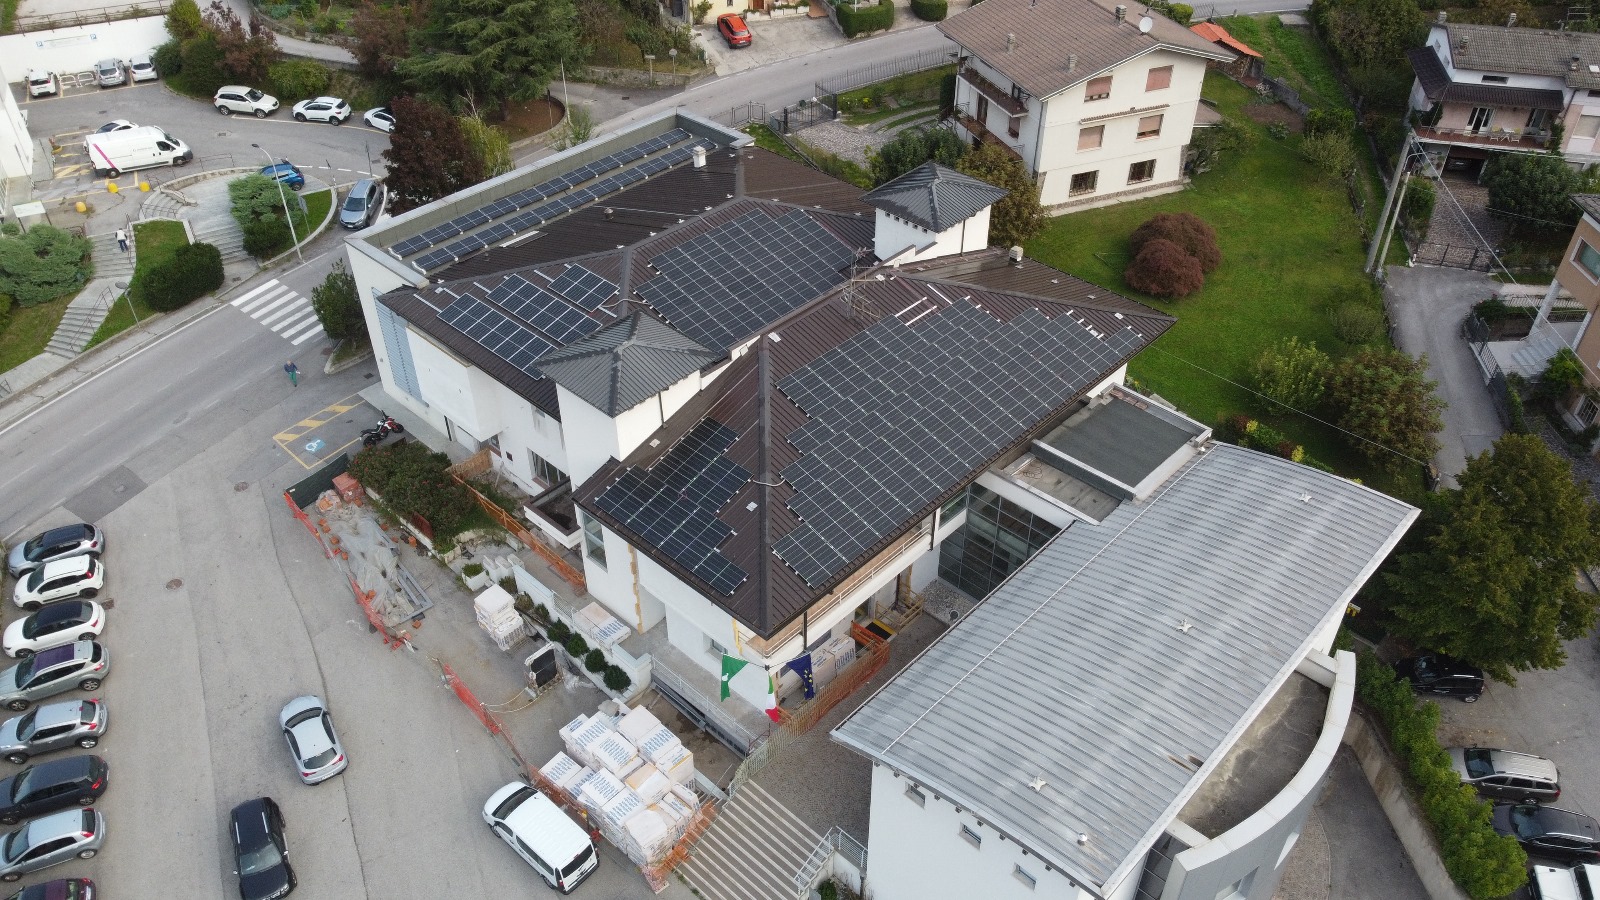 Installazione del nuovo impianto fotovoltaico realizzato grazie al bando Axel di Regione Lombardia 